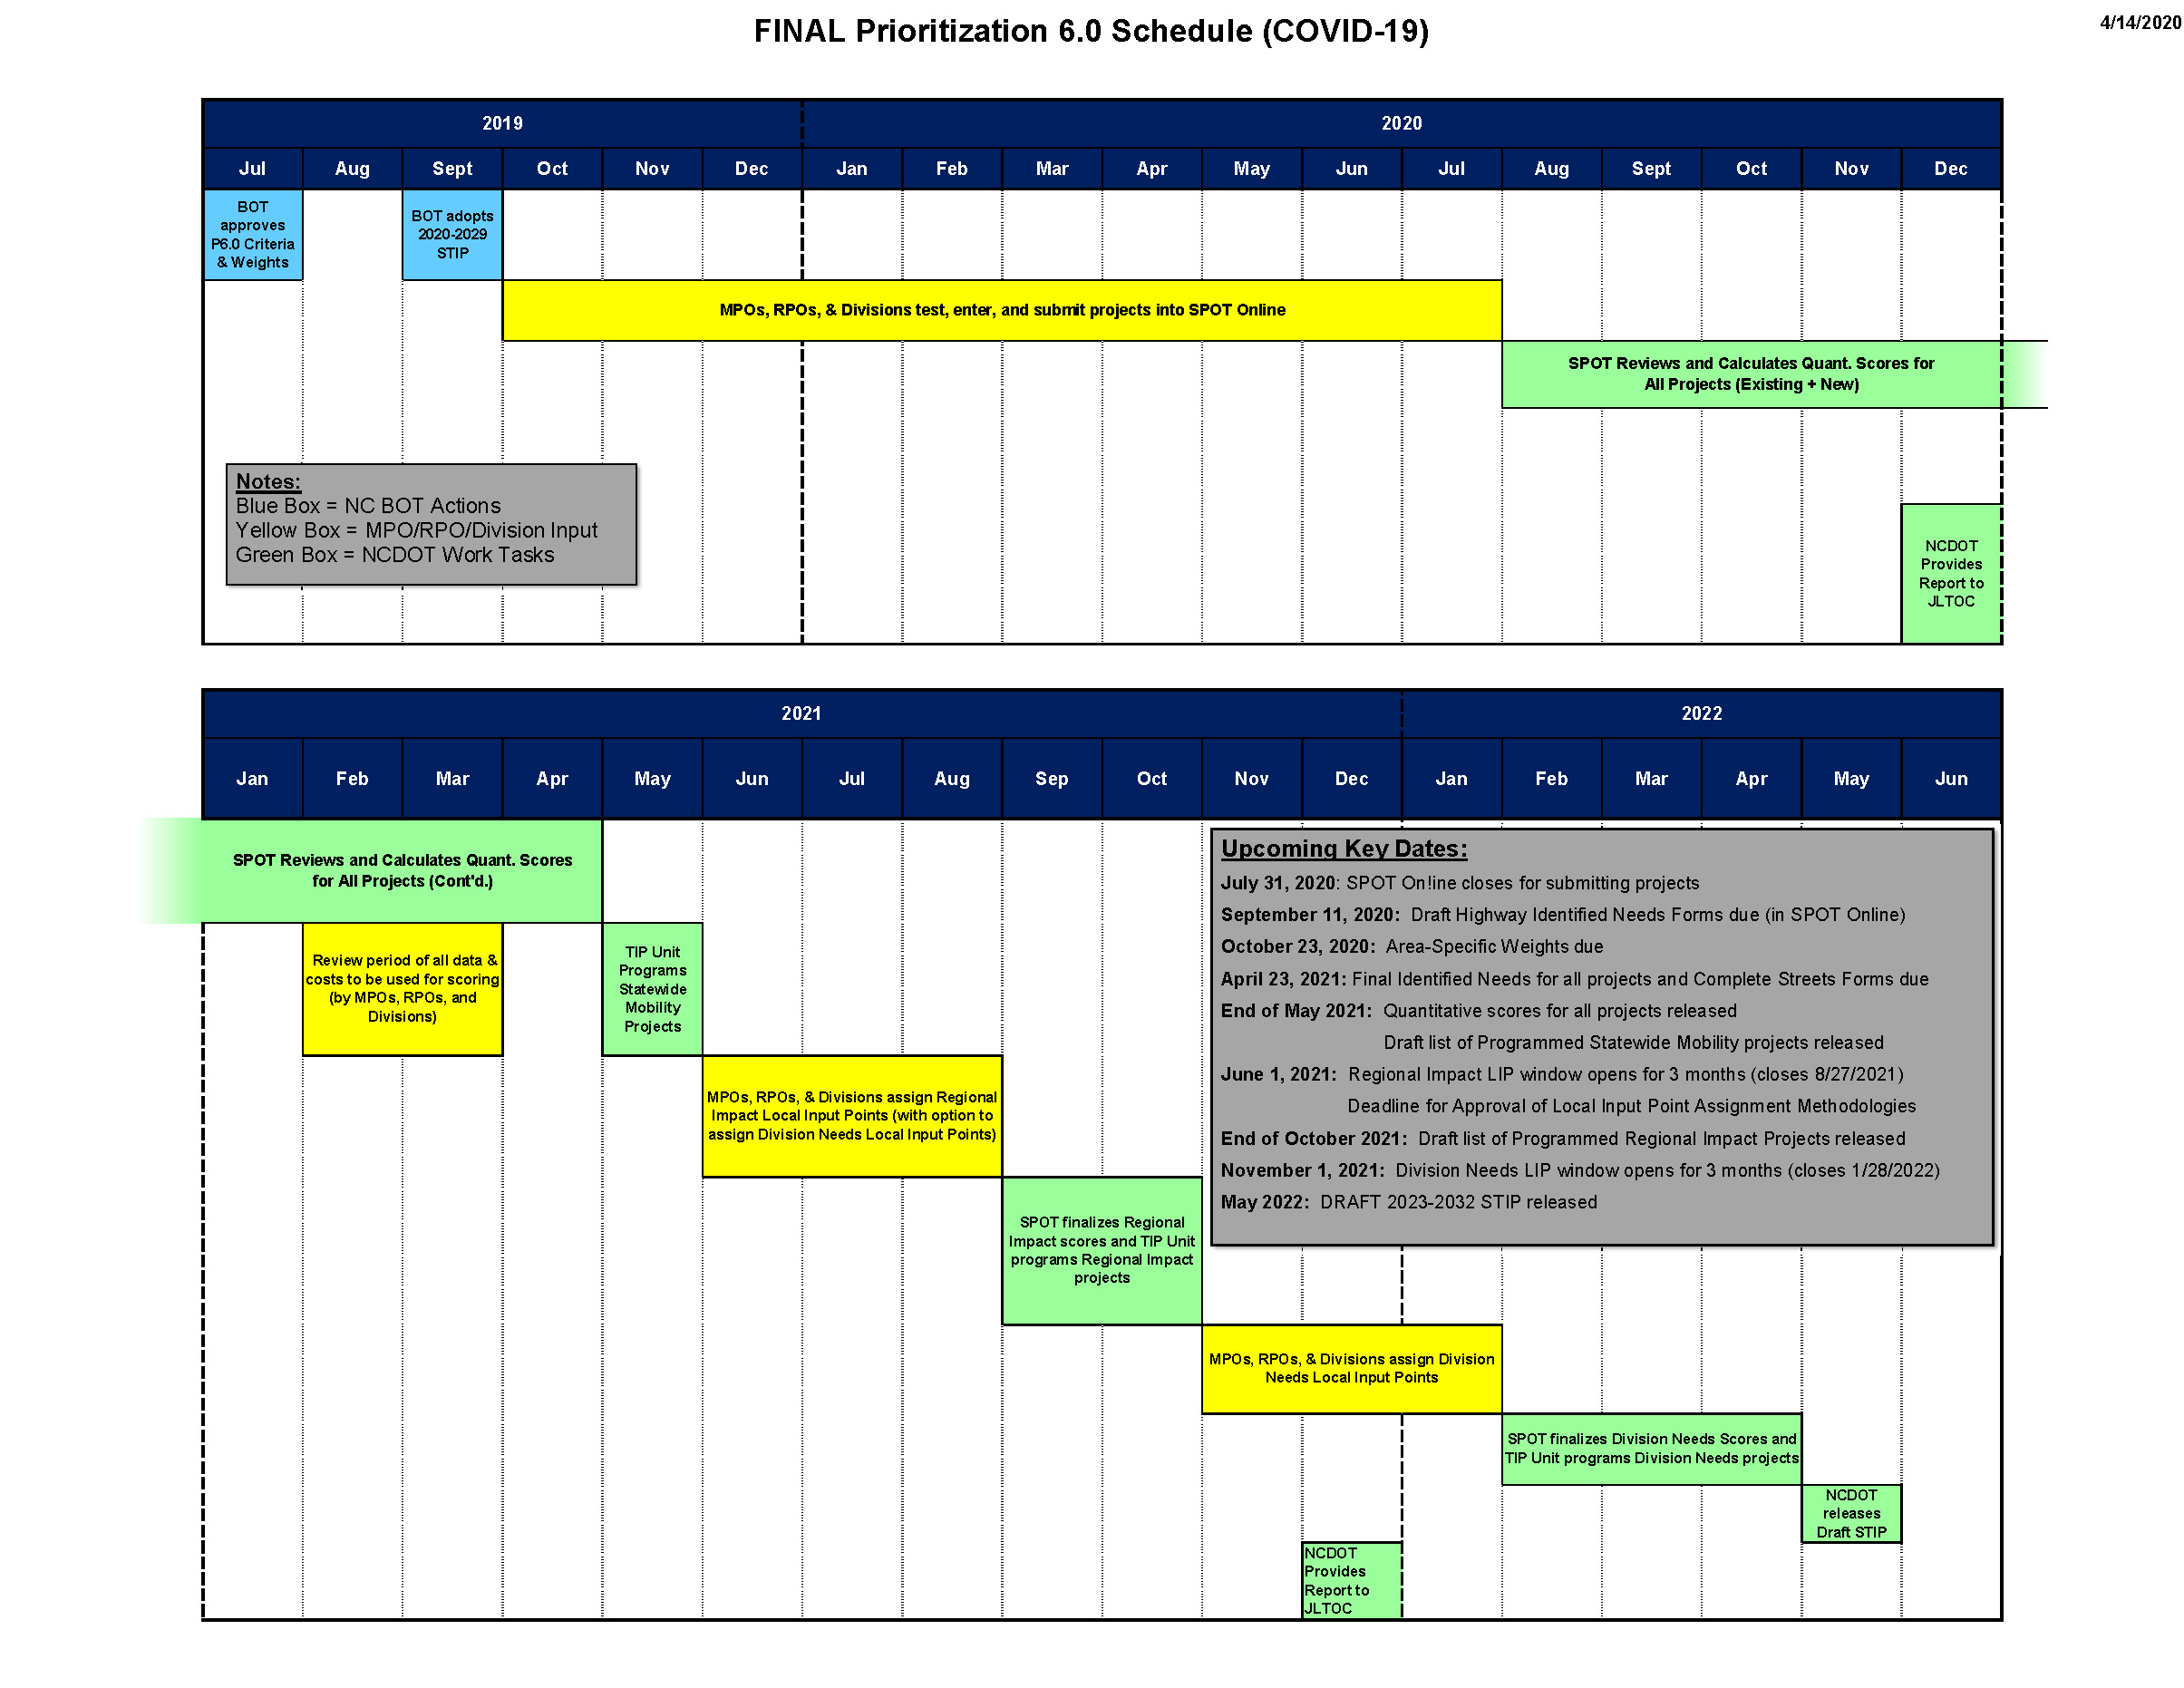 SPOT 6.0 Schedule - Updated April 2020